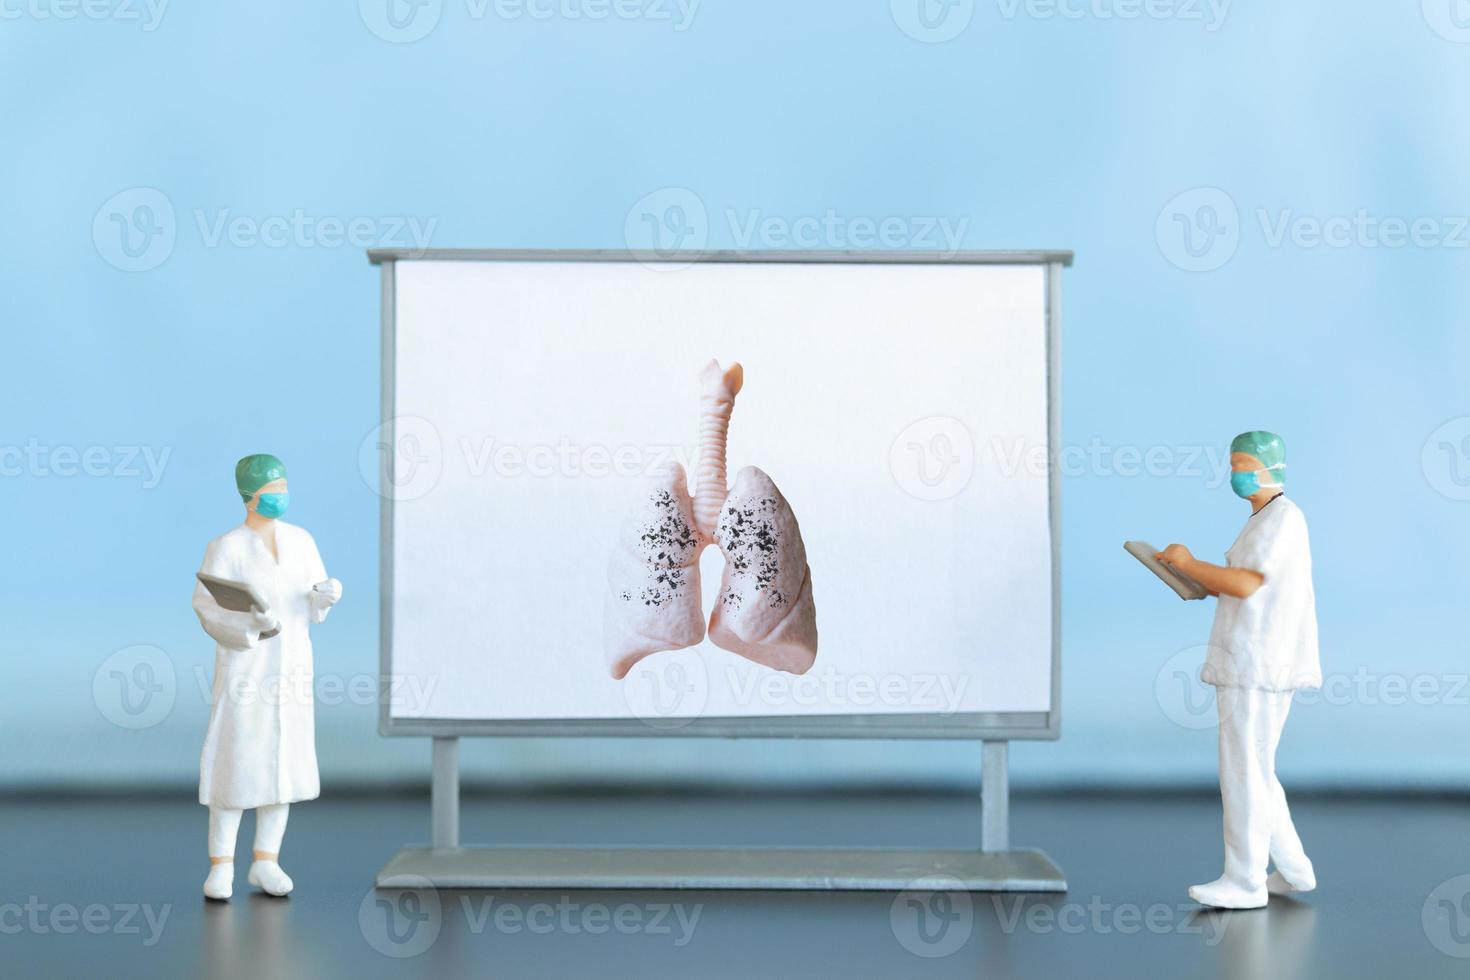 miniatyr- människor. en läkare undersöker lunginflammation i de bild, en respiratorisk sjukdom. foto